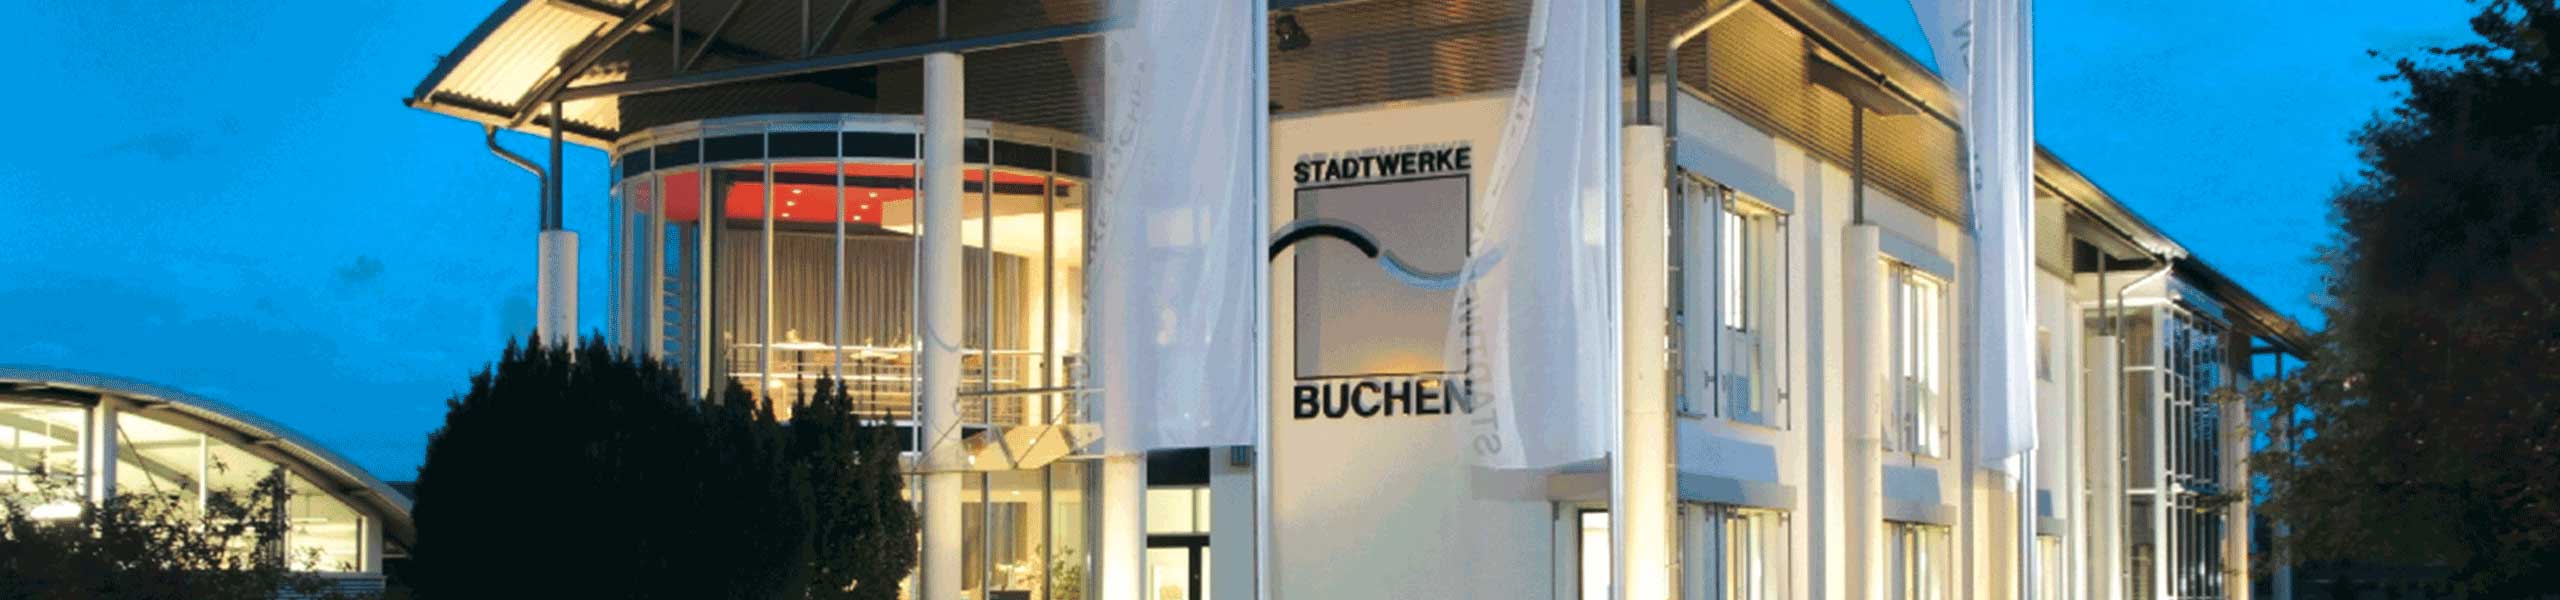 Stadtwerke Buchen GmbH & Co KG - Ihr Versorger vor Ort - Anschluss von Ladeeinrichtungen